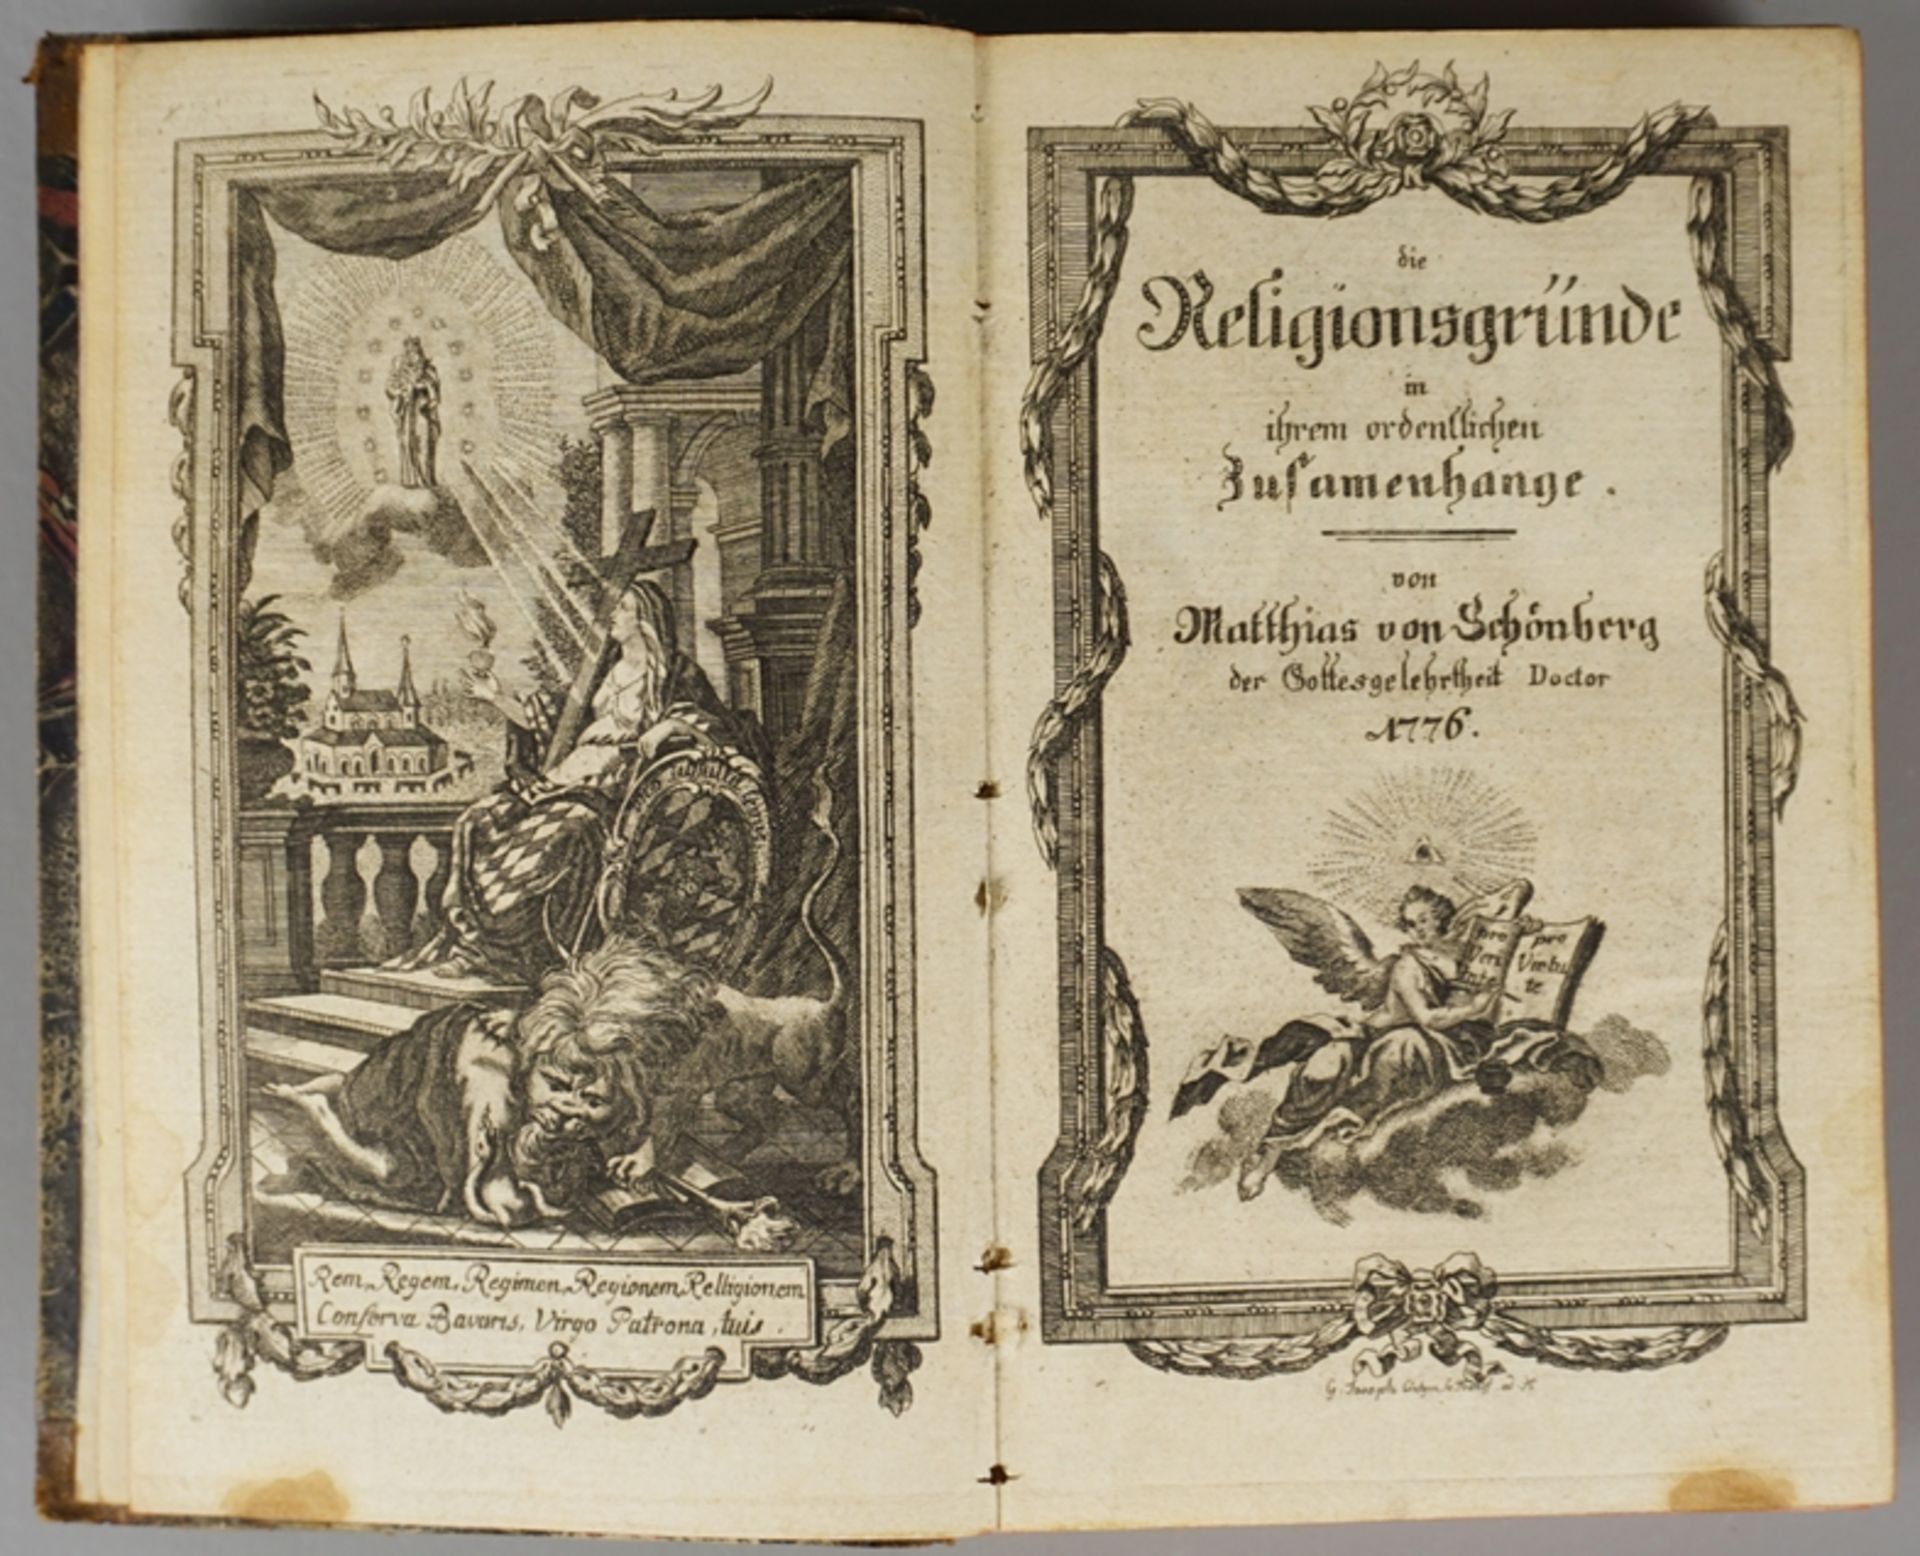 Matthias von Schönberg, Die Reliegionsgründe in ihrem ordentlichen Zusammenhange, 1776